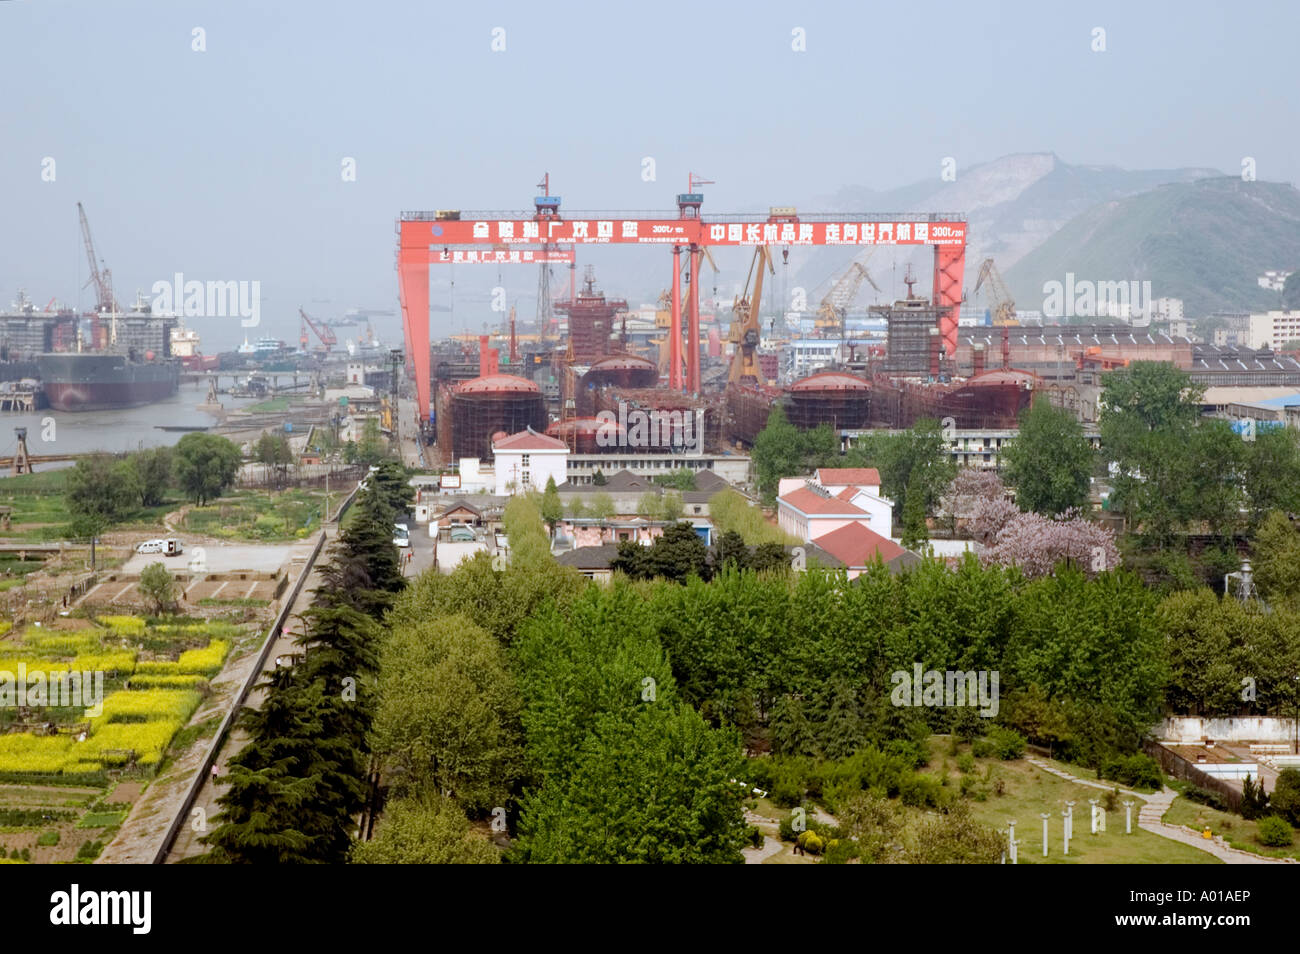 The Jinling shipbuilding yard at Nanjing Stock Photo